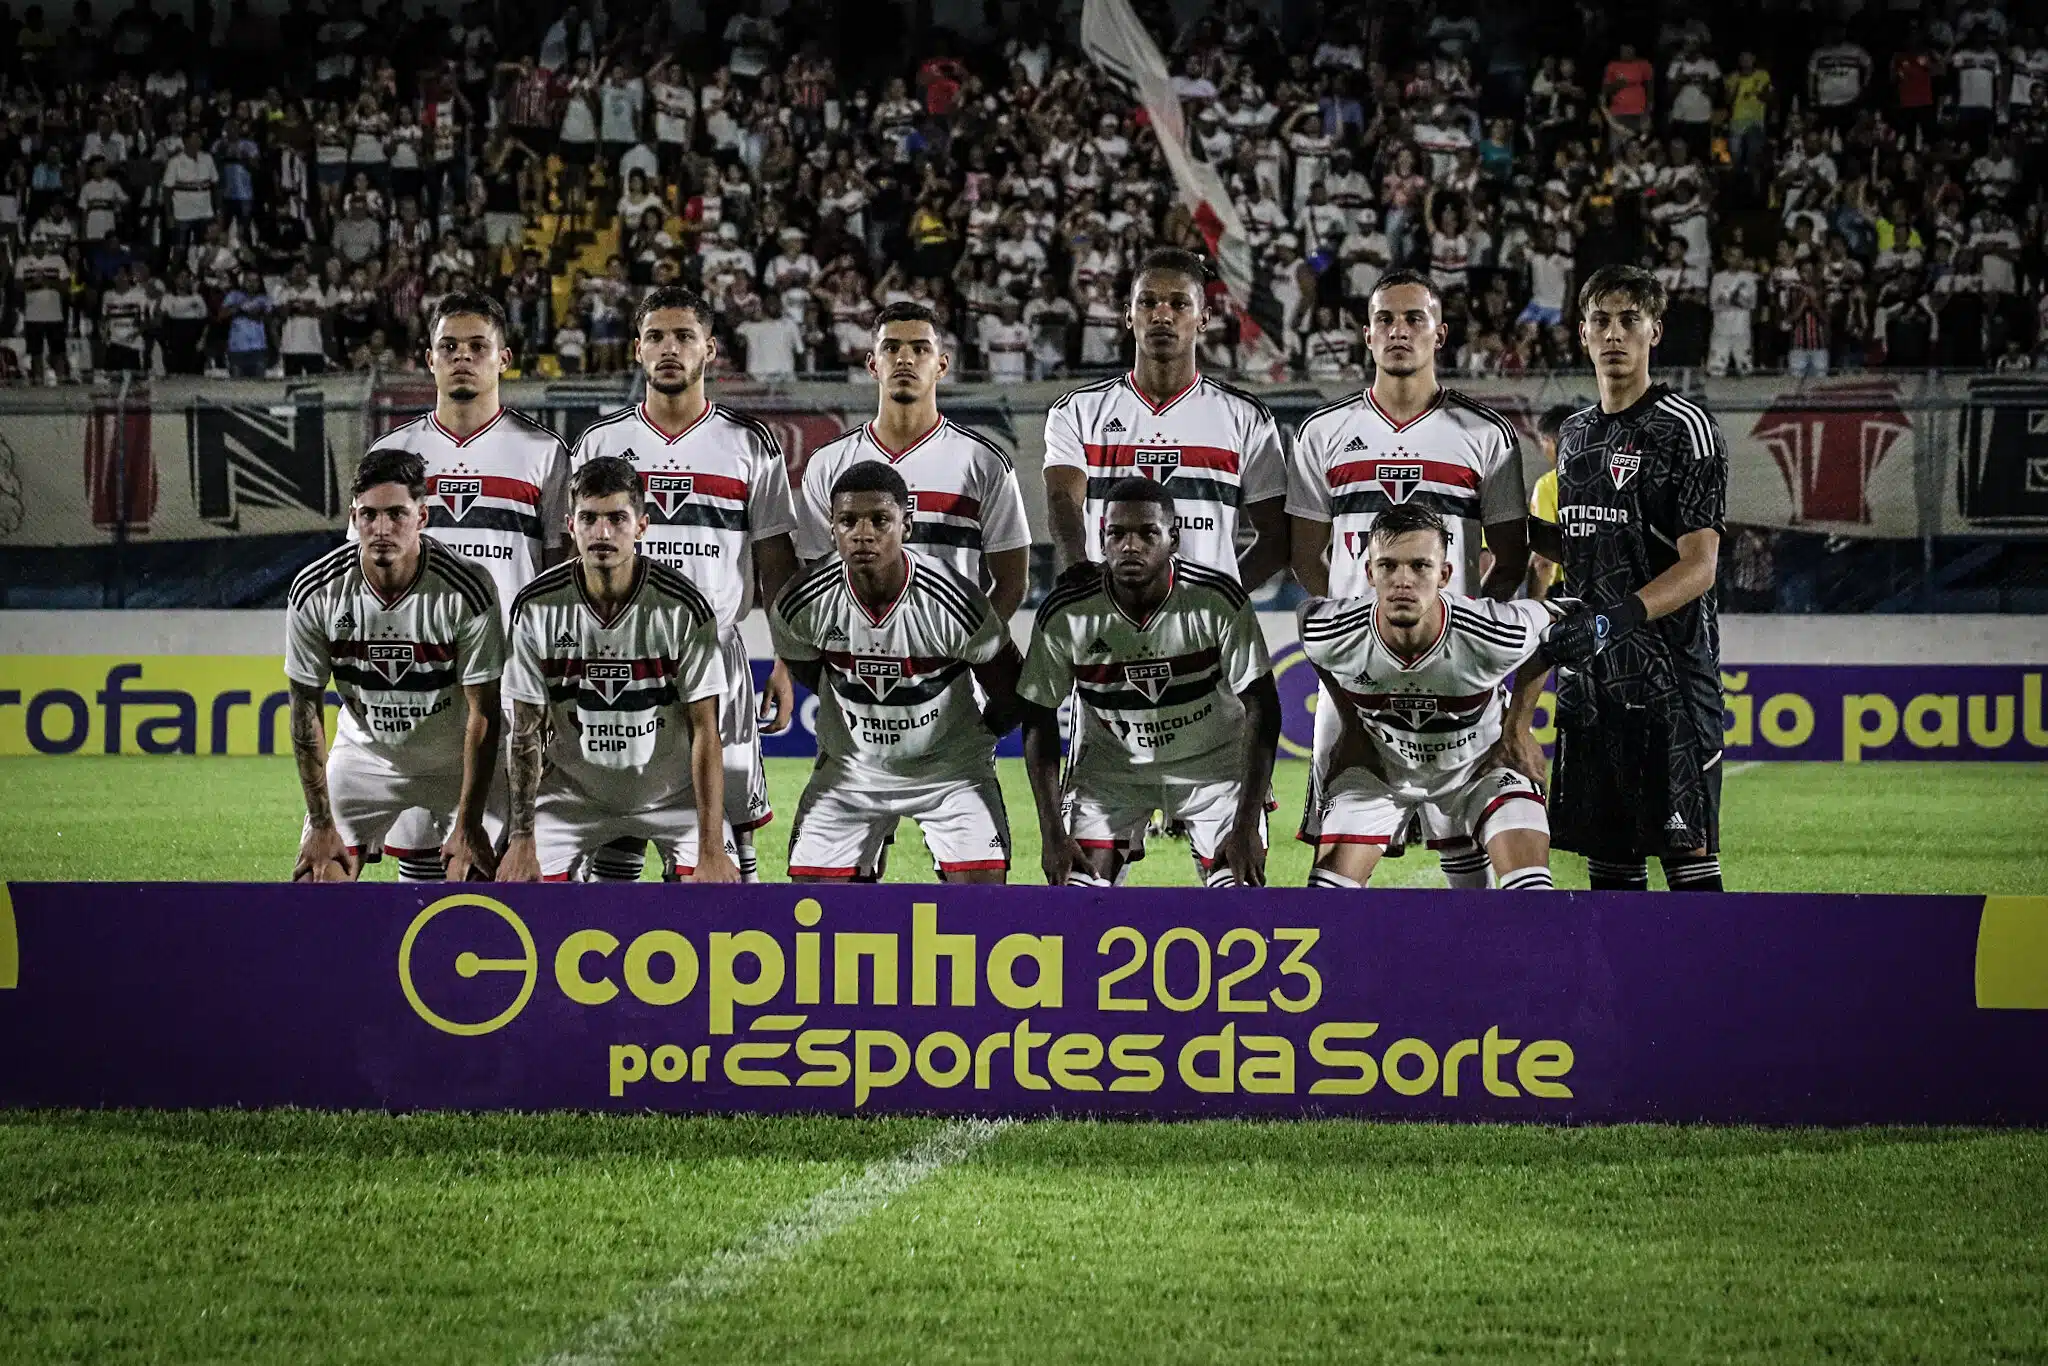 De virada, São Paulo perde para o América-MG e está eliminado da Copinha 2023